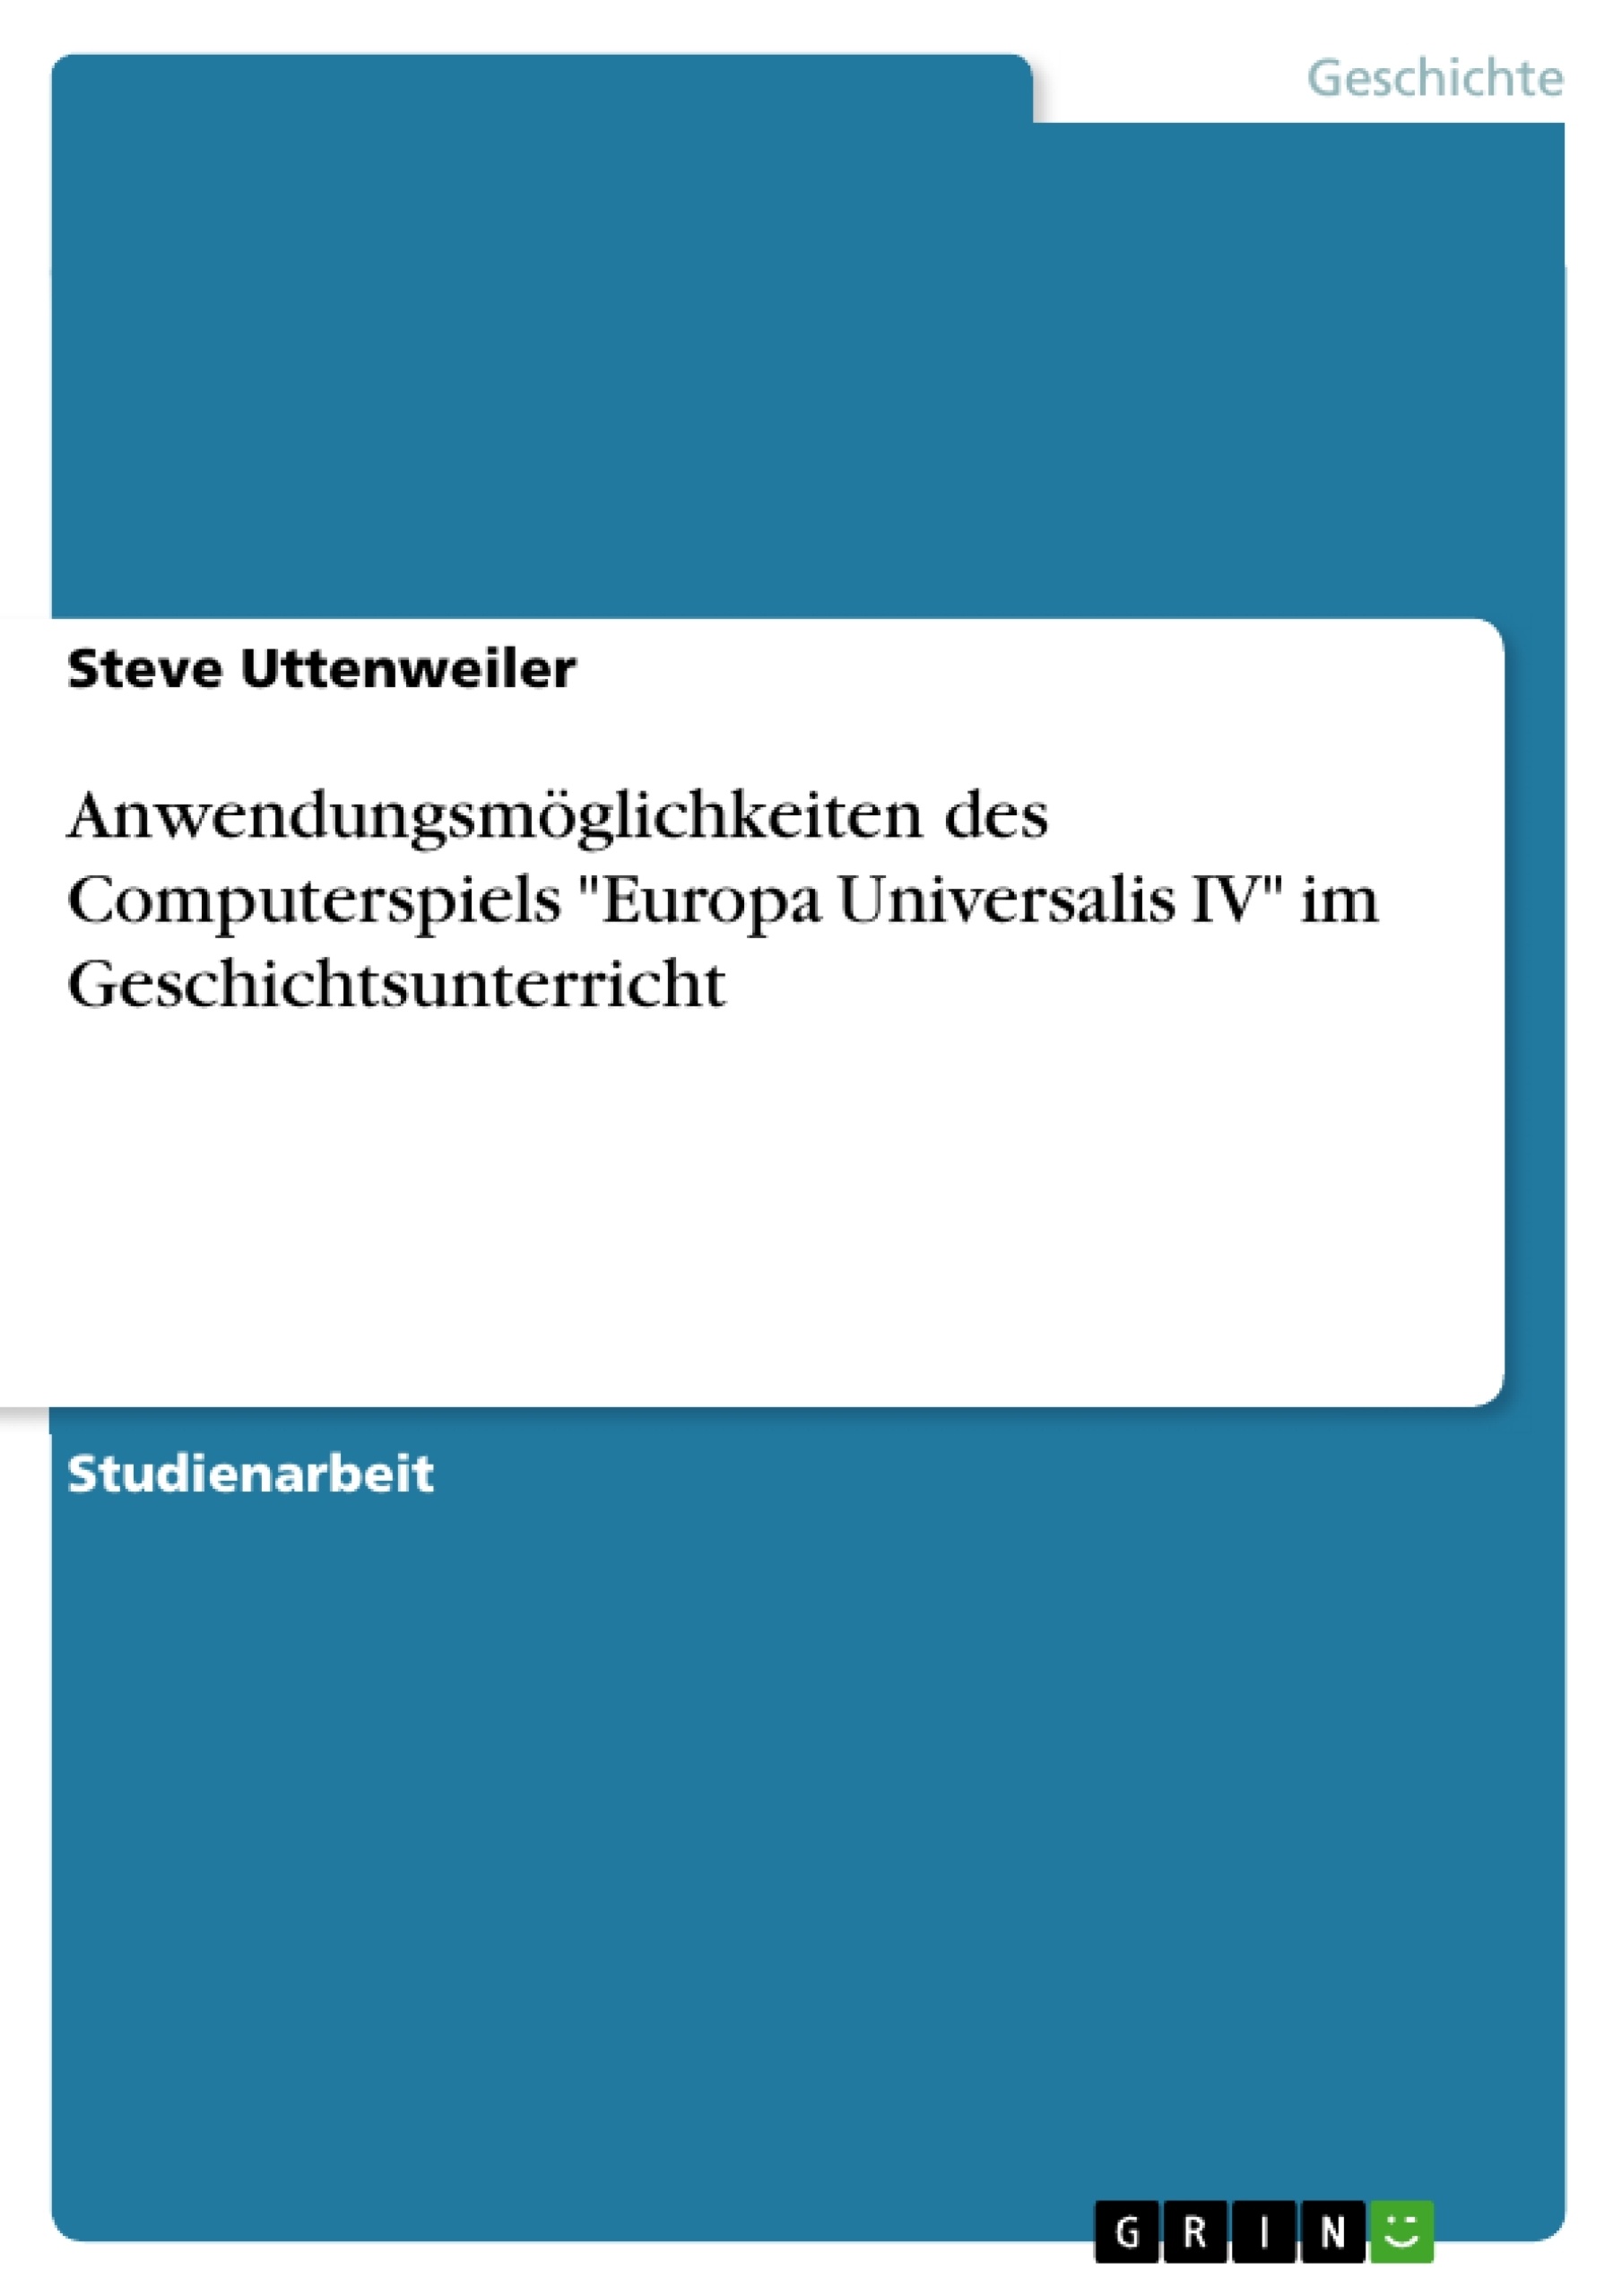 Titre: Anwendungsmöglichkeiten des Computerspiels "Europa Universalis IV" im Geschichtsunterricht